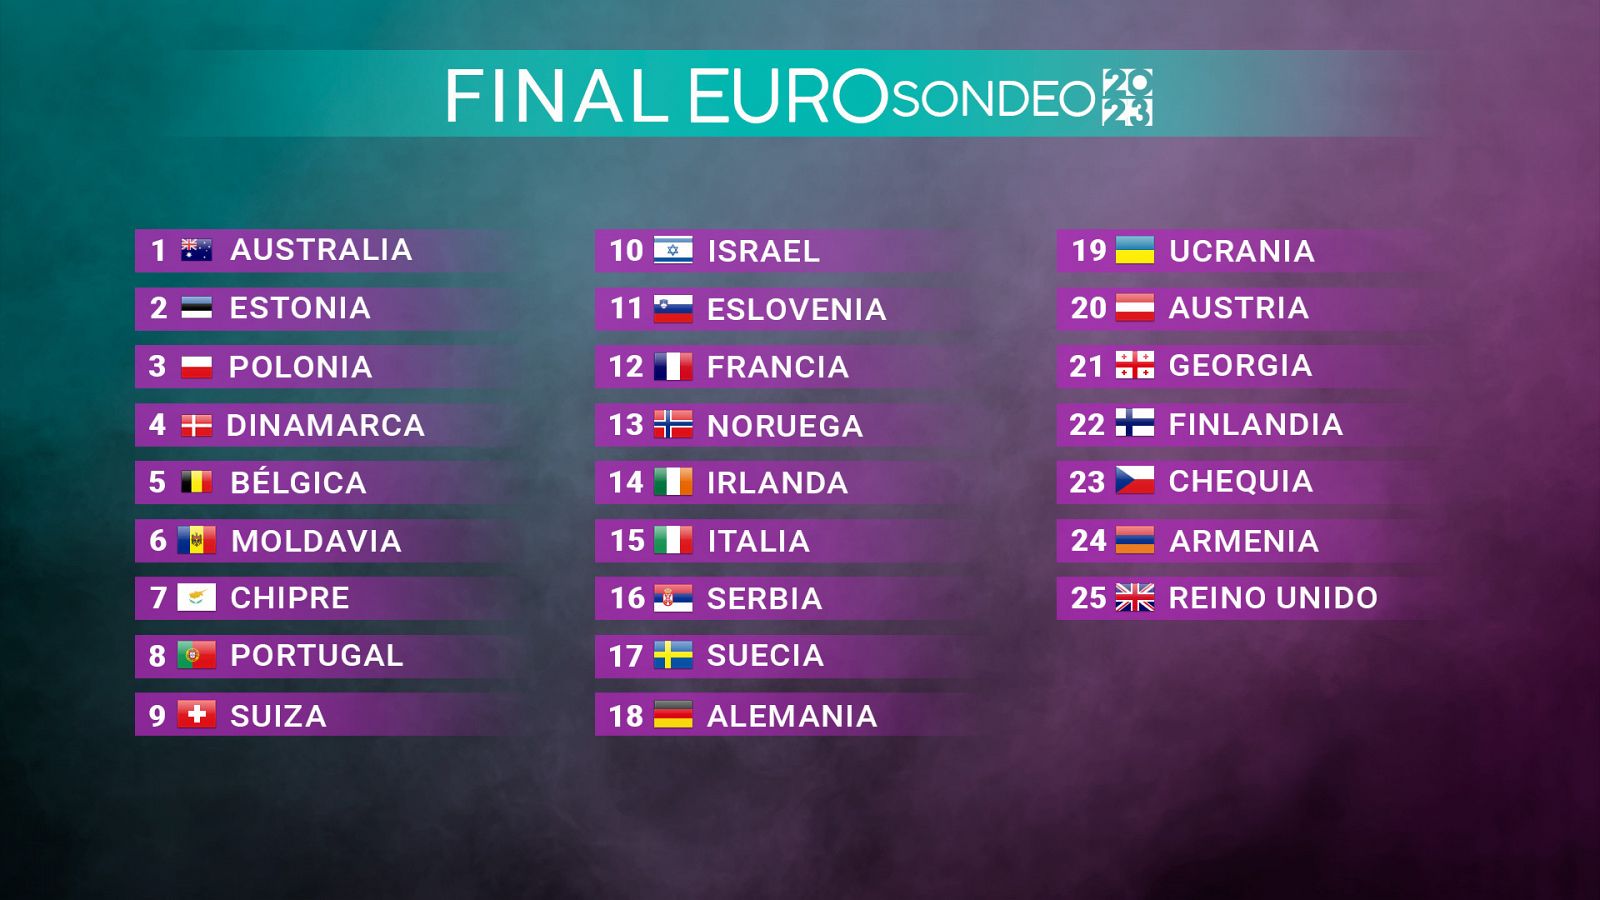 Favorita de eurovision 2023